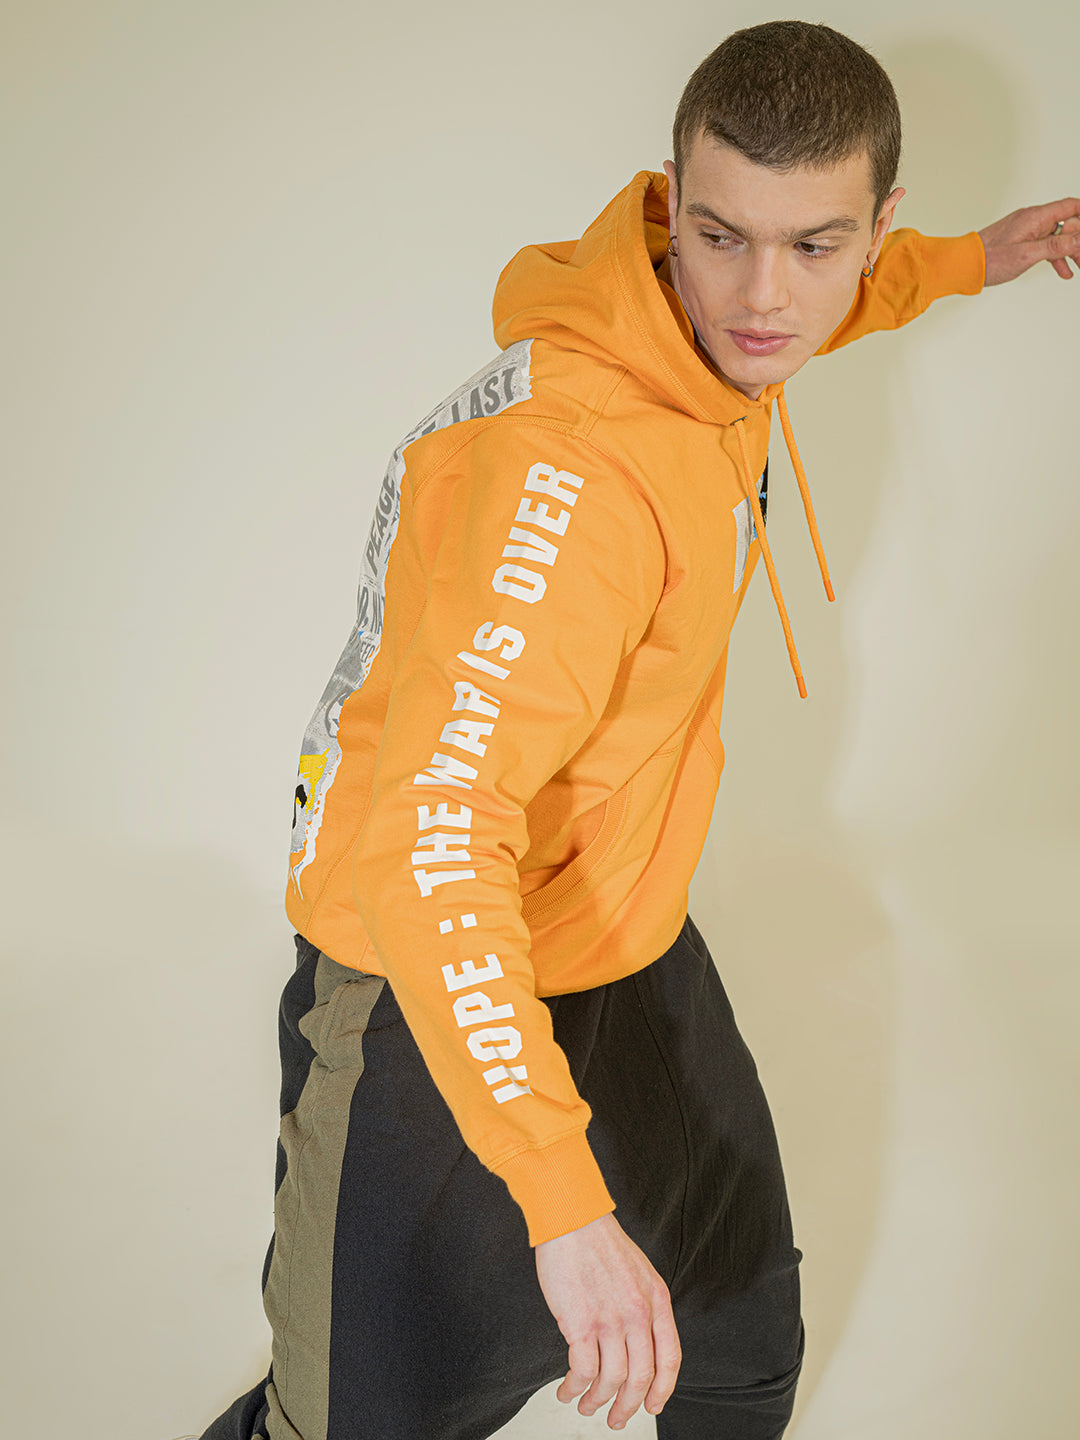 Punk HITLER-HEAD Orange Hoodie Sweatshirt